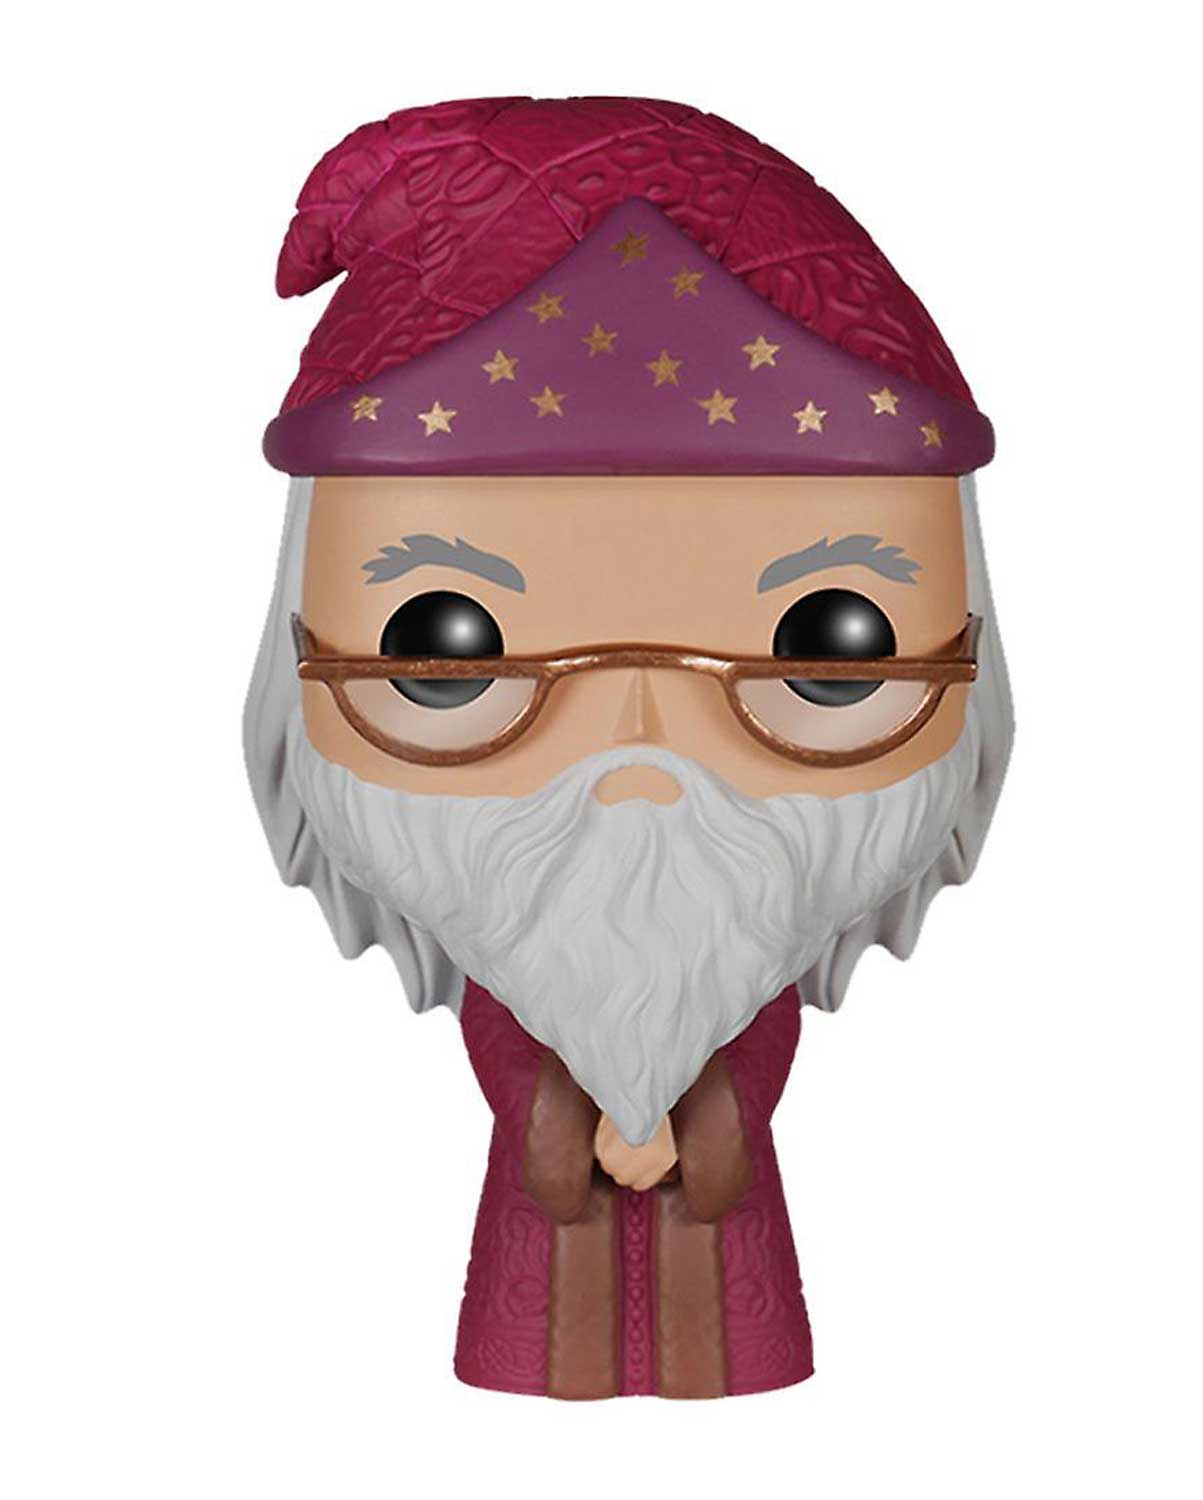 Bobble Figure Harry Potter POP! - Albus Dumbledore 